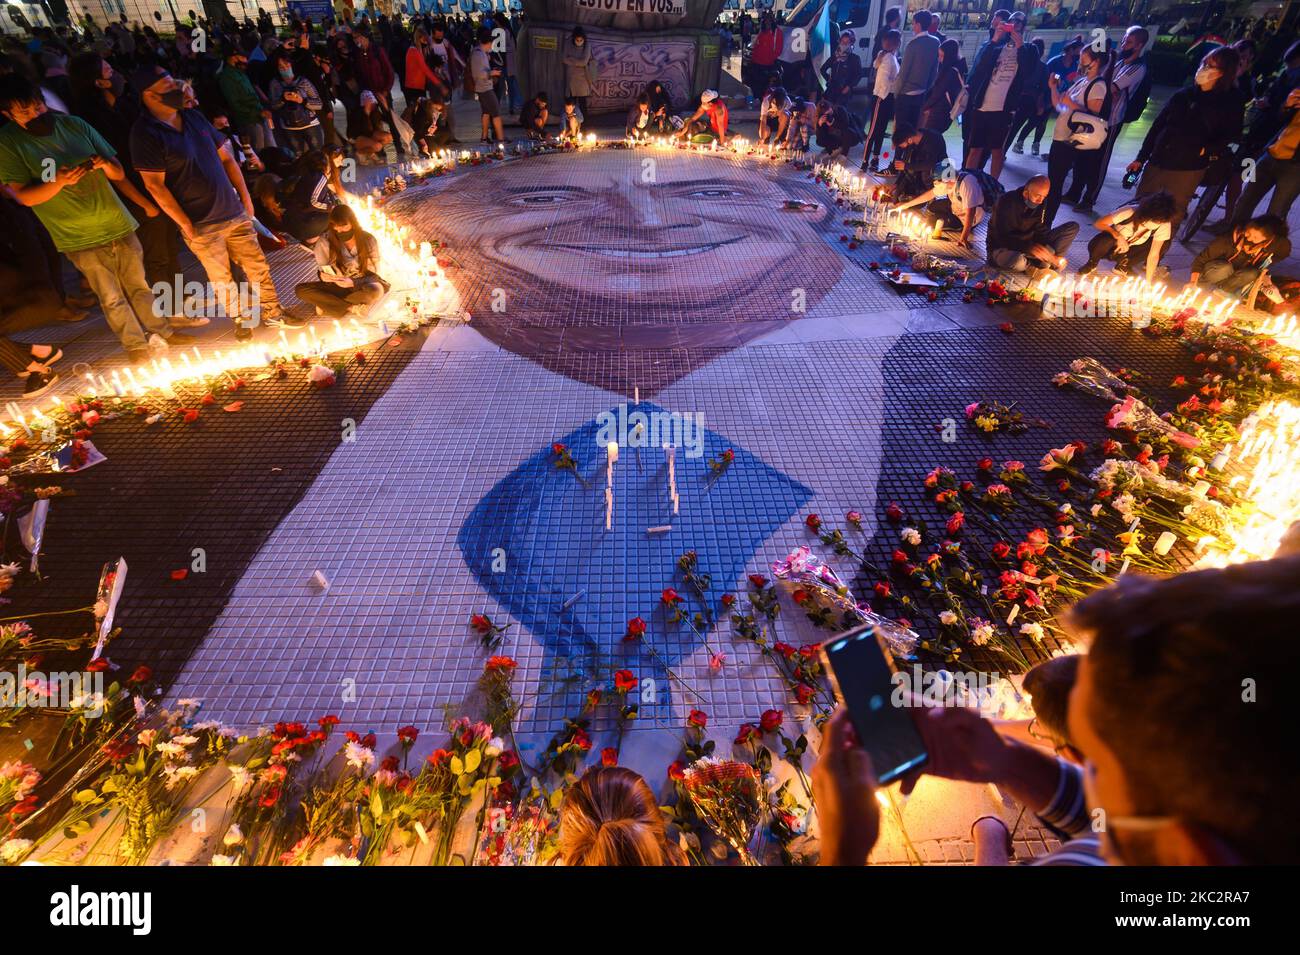 Manifestantes participan en un homenaje al ex presidente de Argentina (2003-2007) Néstor Kirchner el 27 de octubre de 2020 en Buenos Aires, Argentina. Kirchner murió de un ataque cardíaco a la edad de 60 años el 27 de octubre de 2010, en El Calafate, sur de Argentina. (Foto de Manuel Cortina/NurPhoto) Foto de stock